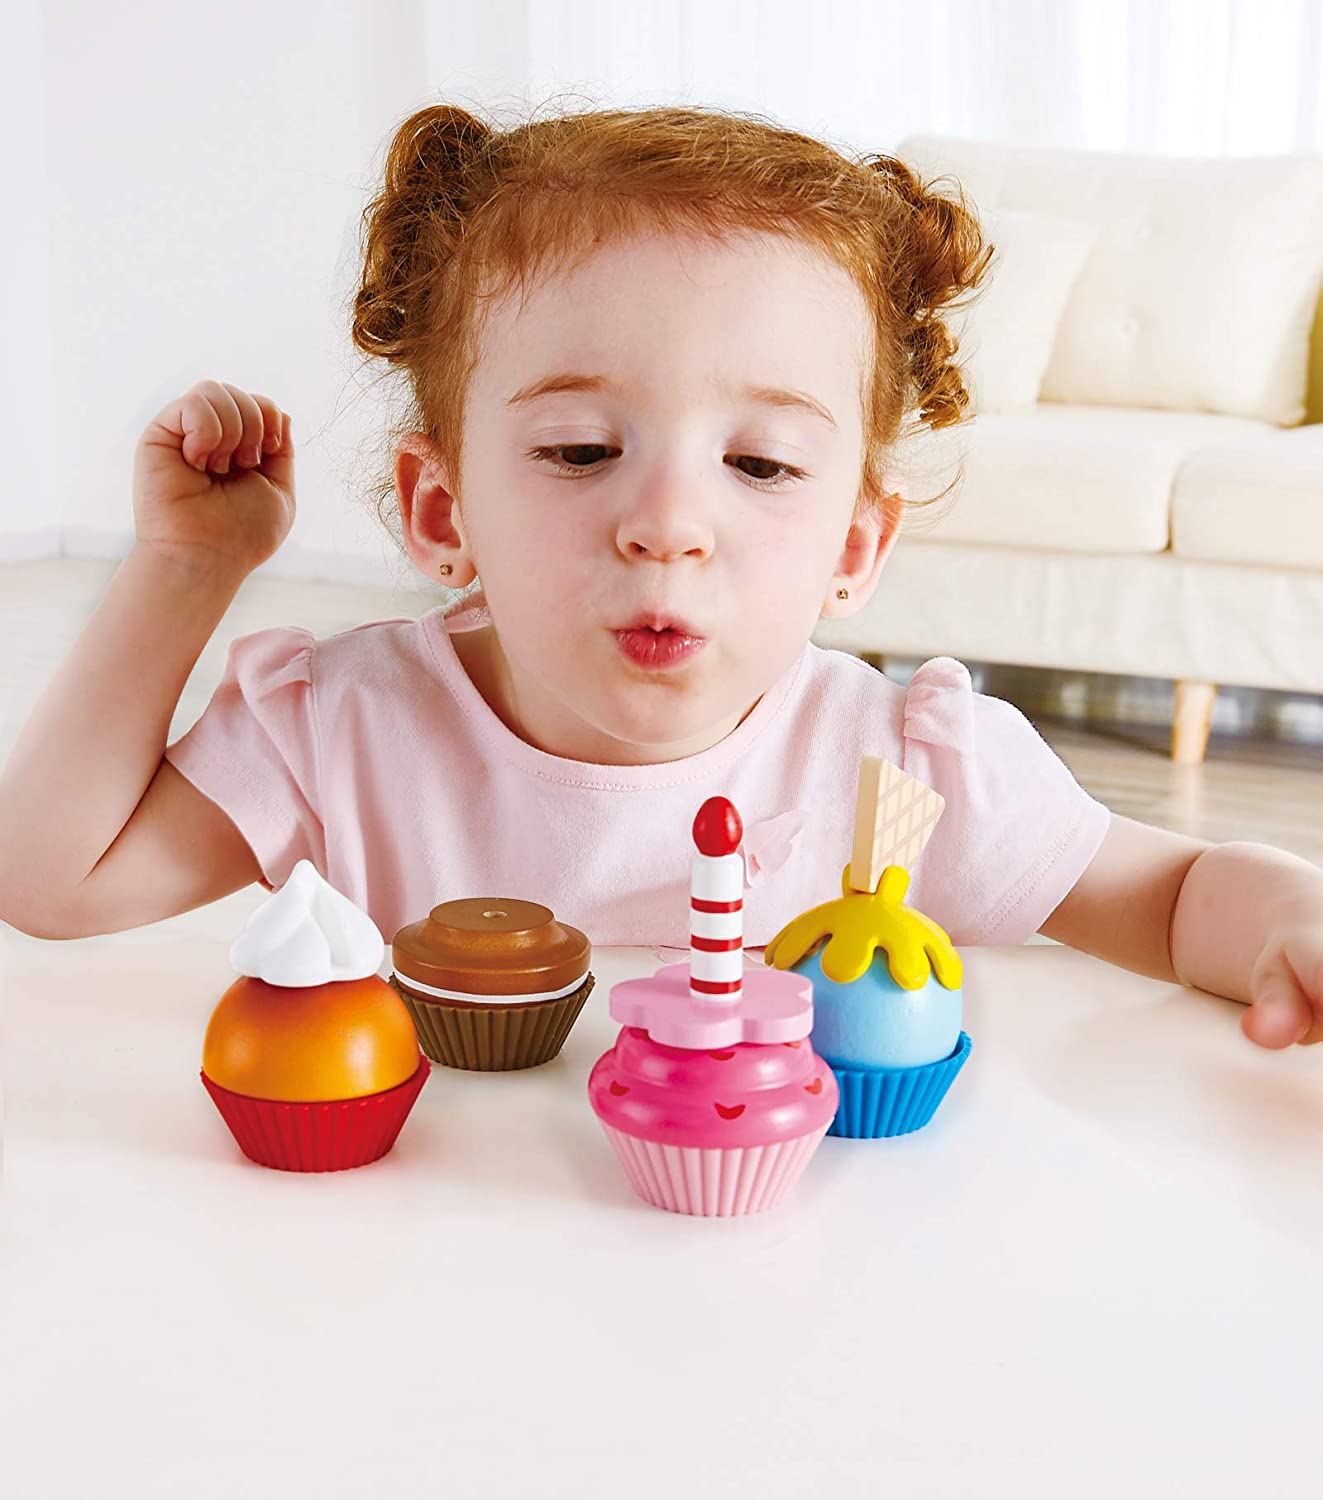 Hape - Cupcakes coloridos de madeira, simulação realista para brincar de cozinha com comida